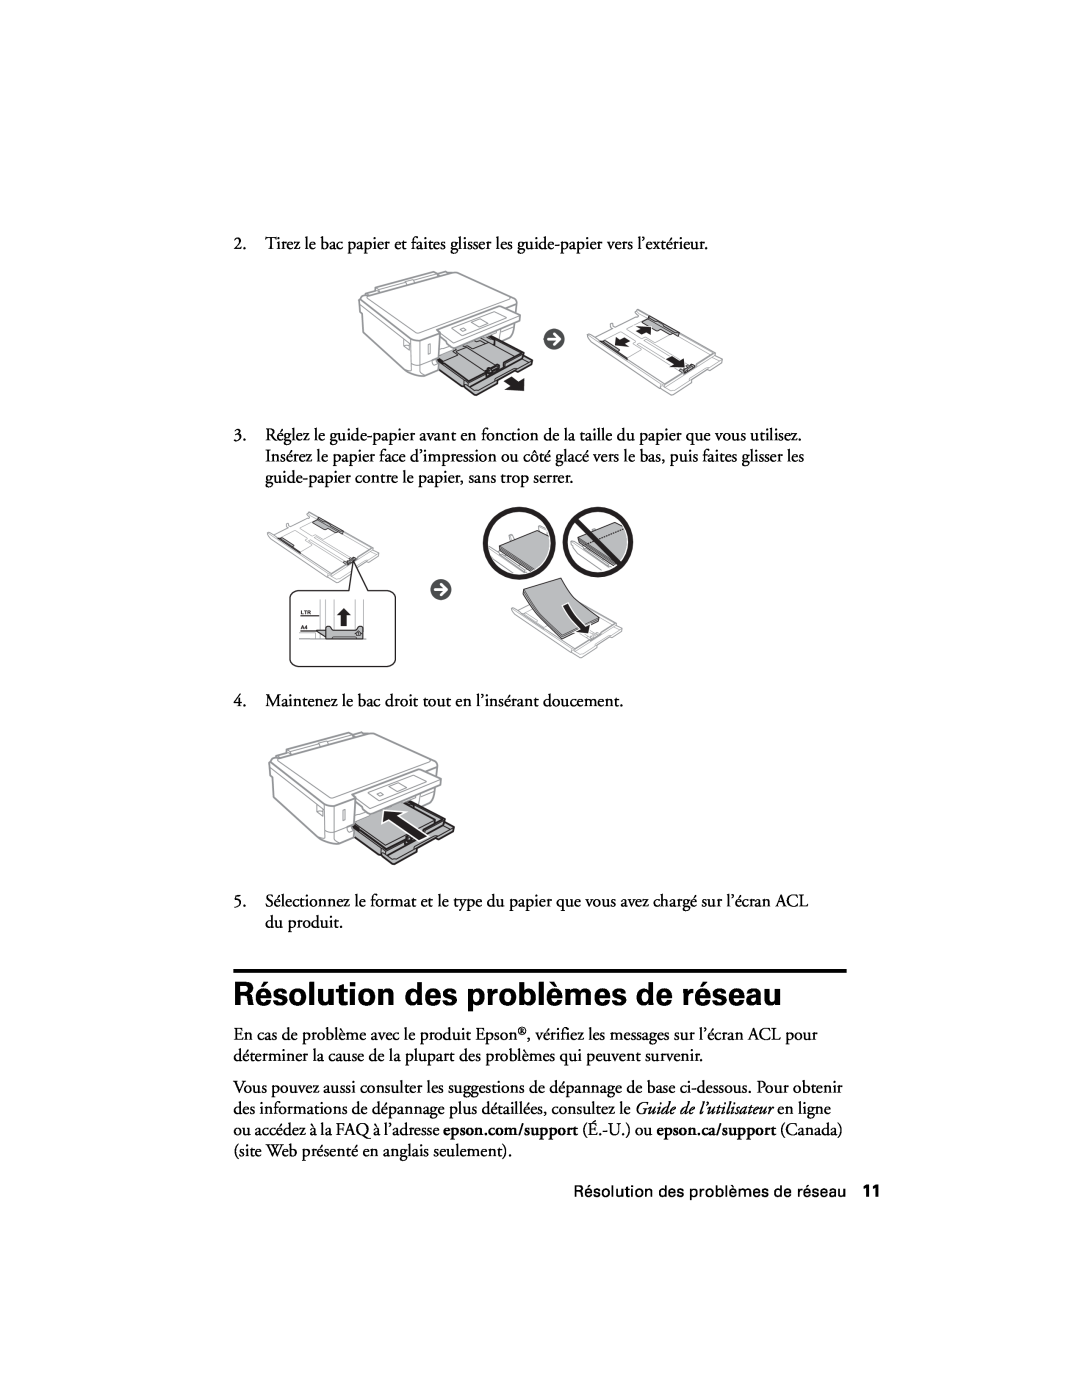 Epson XP-520 manual Résolution des problèmes de réseau 